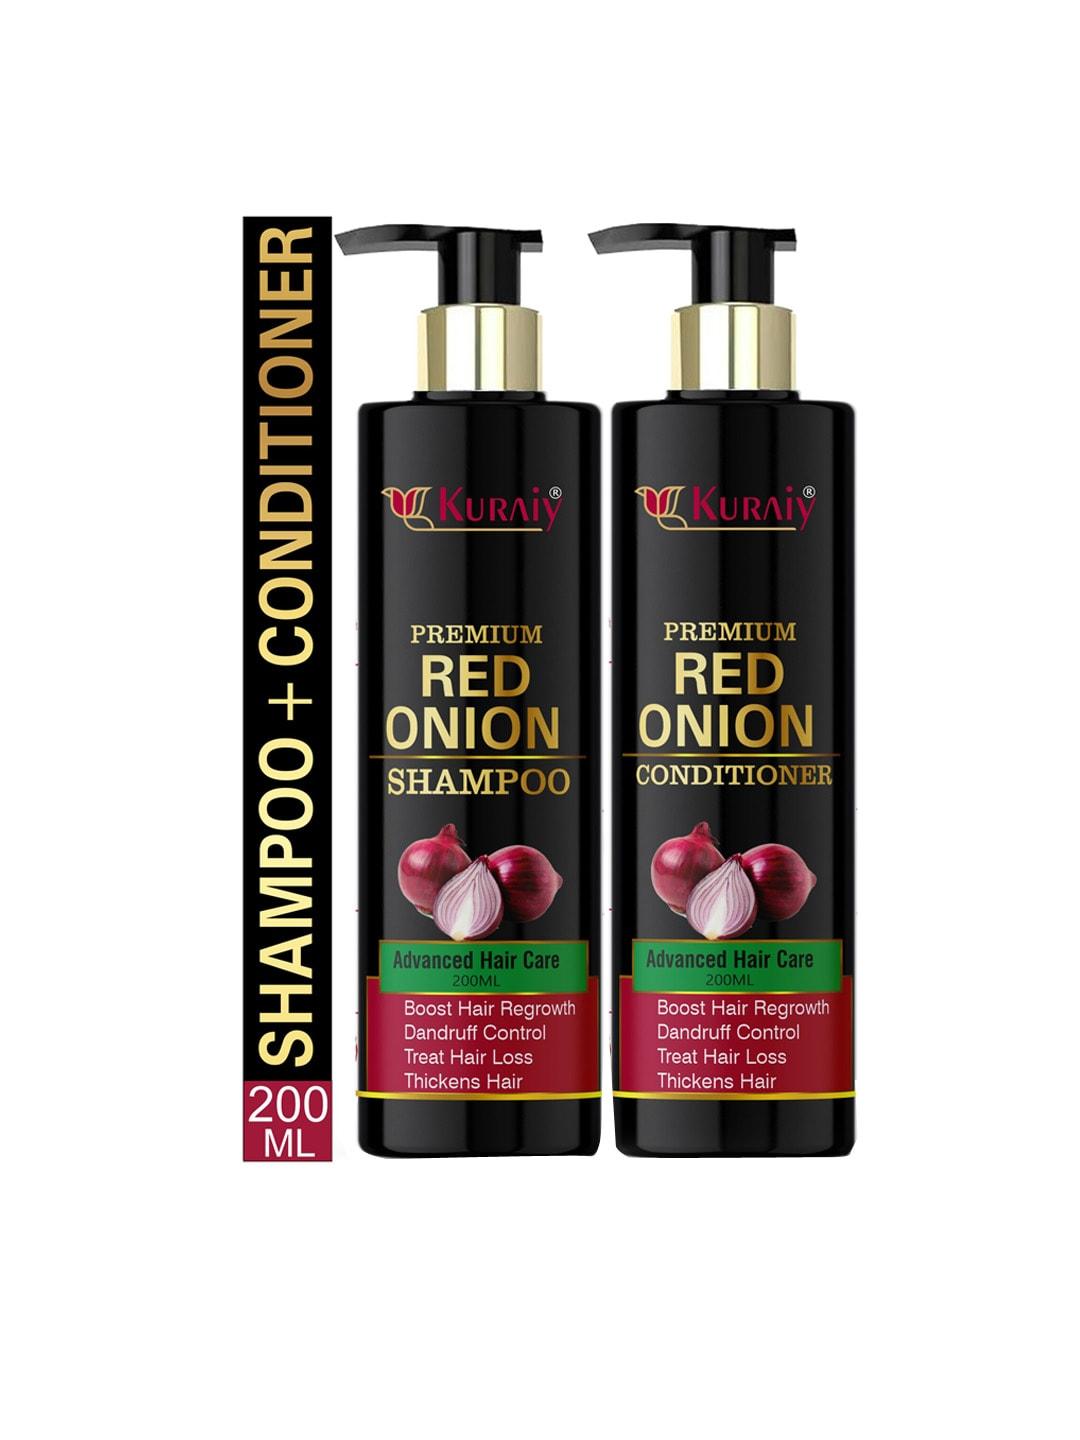 KURAIY Premium Advanced Hair Care Red Onion Shampoo & Conditioner - 200 ml Each